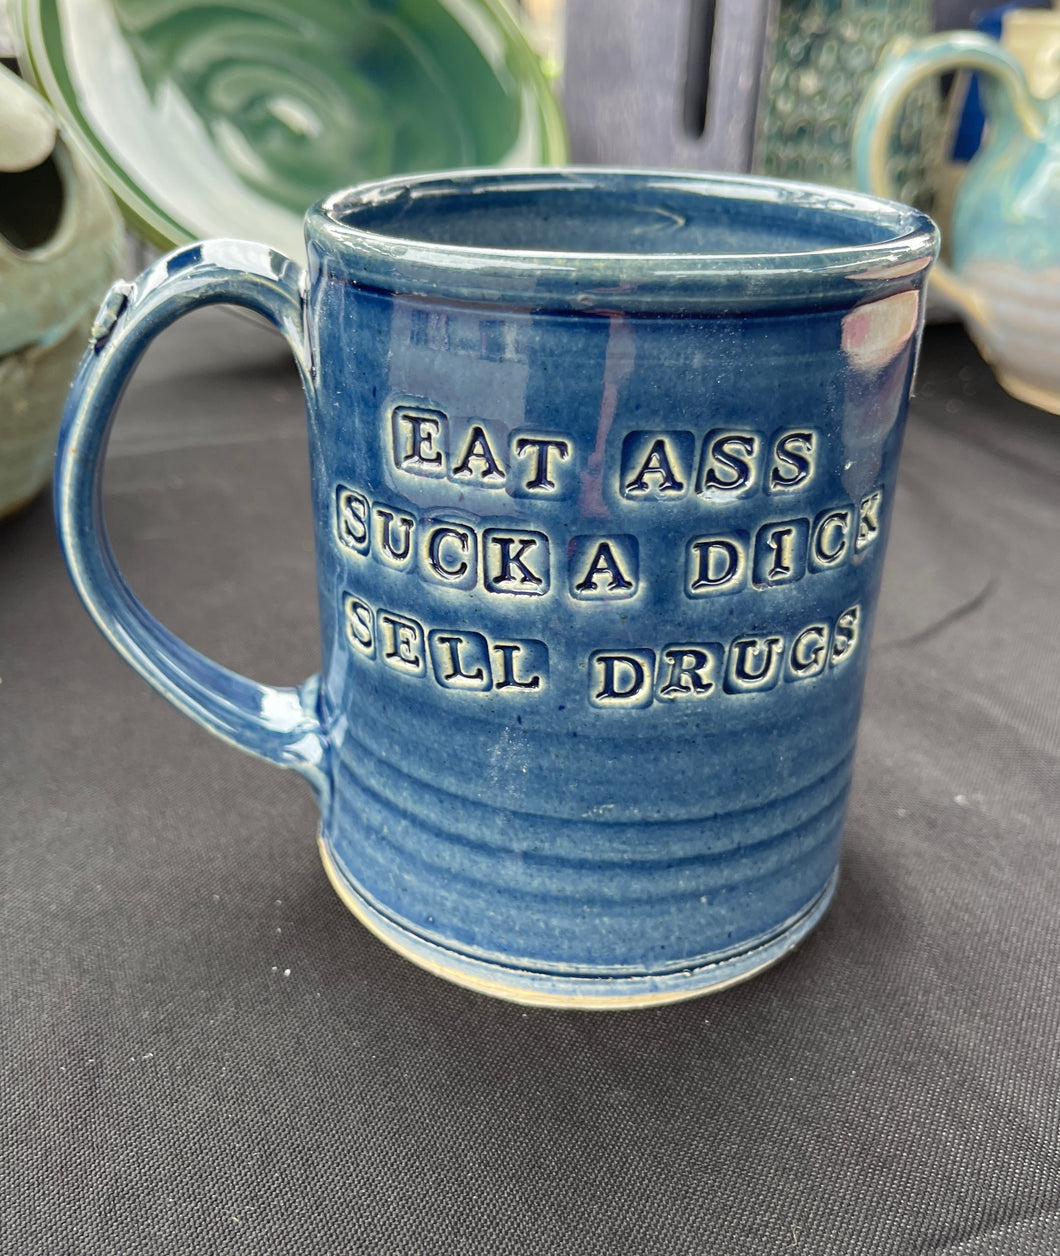 Eat Ass Mug